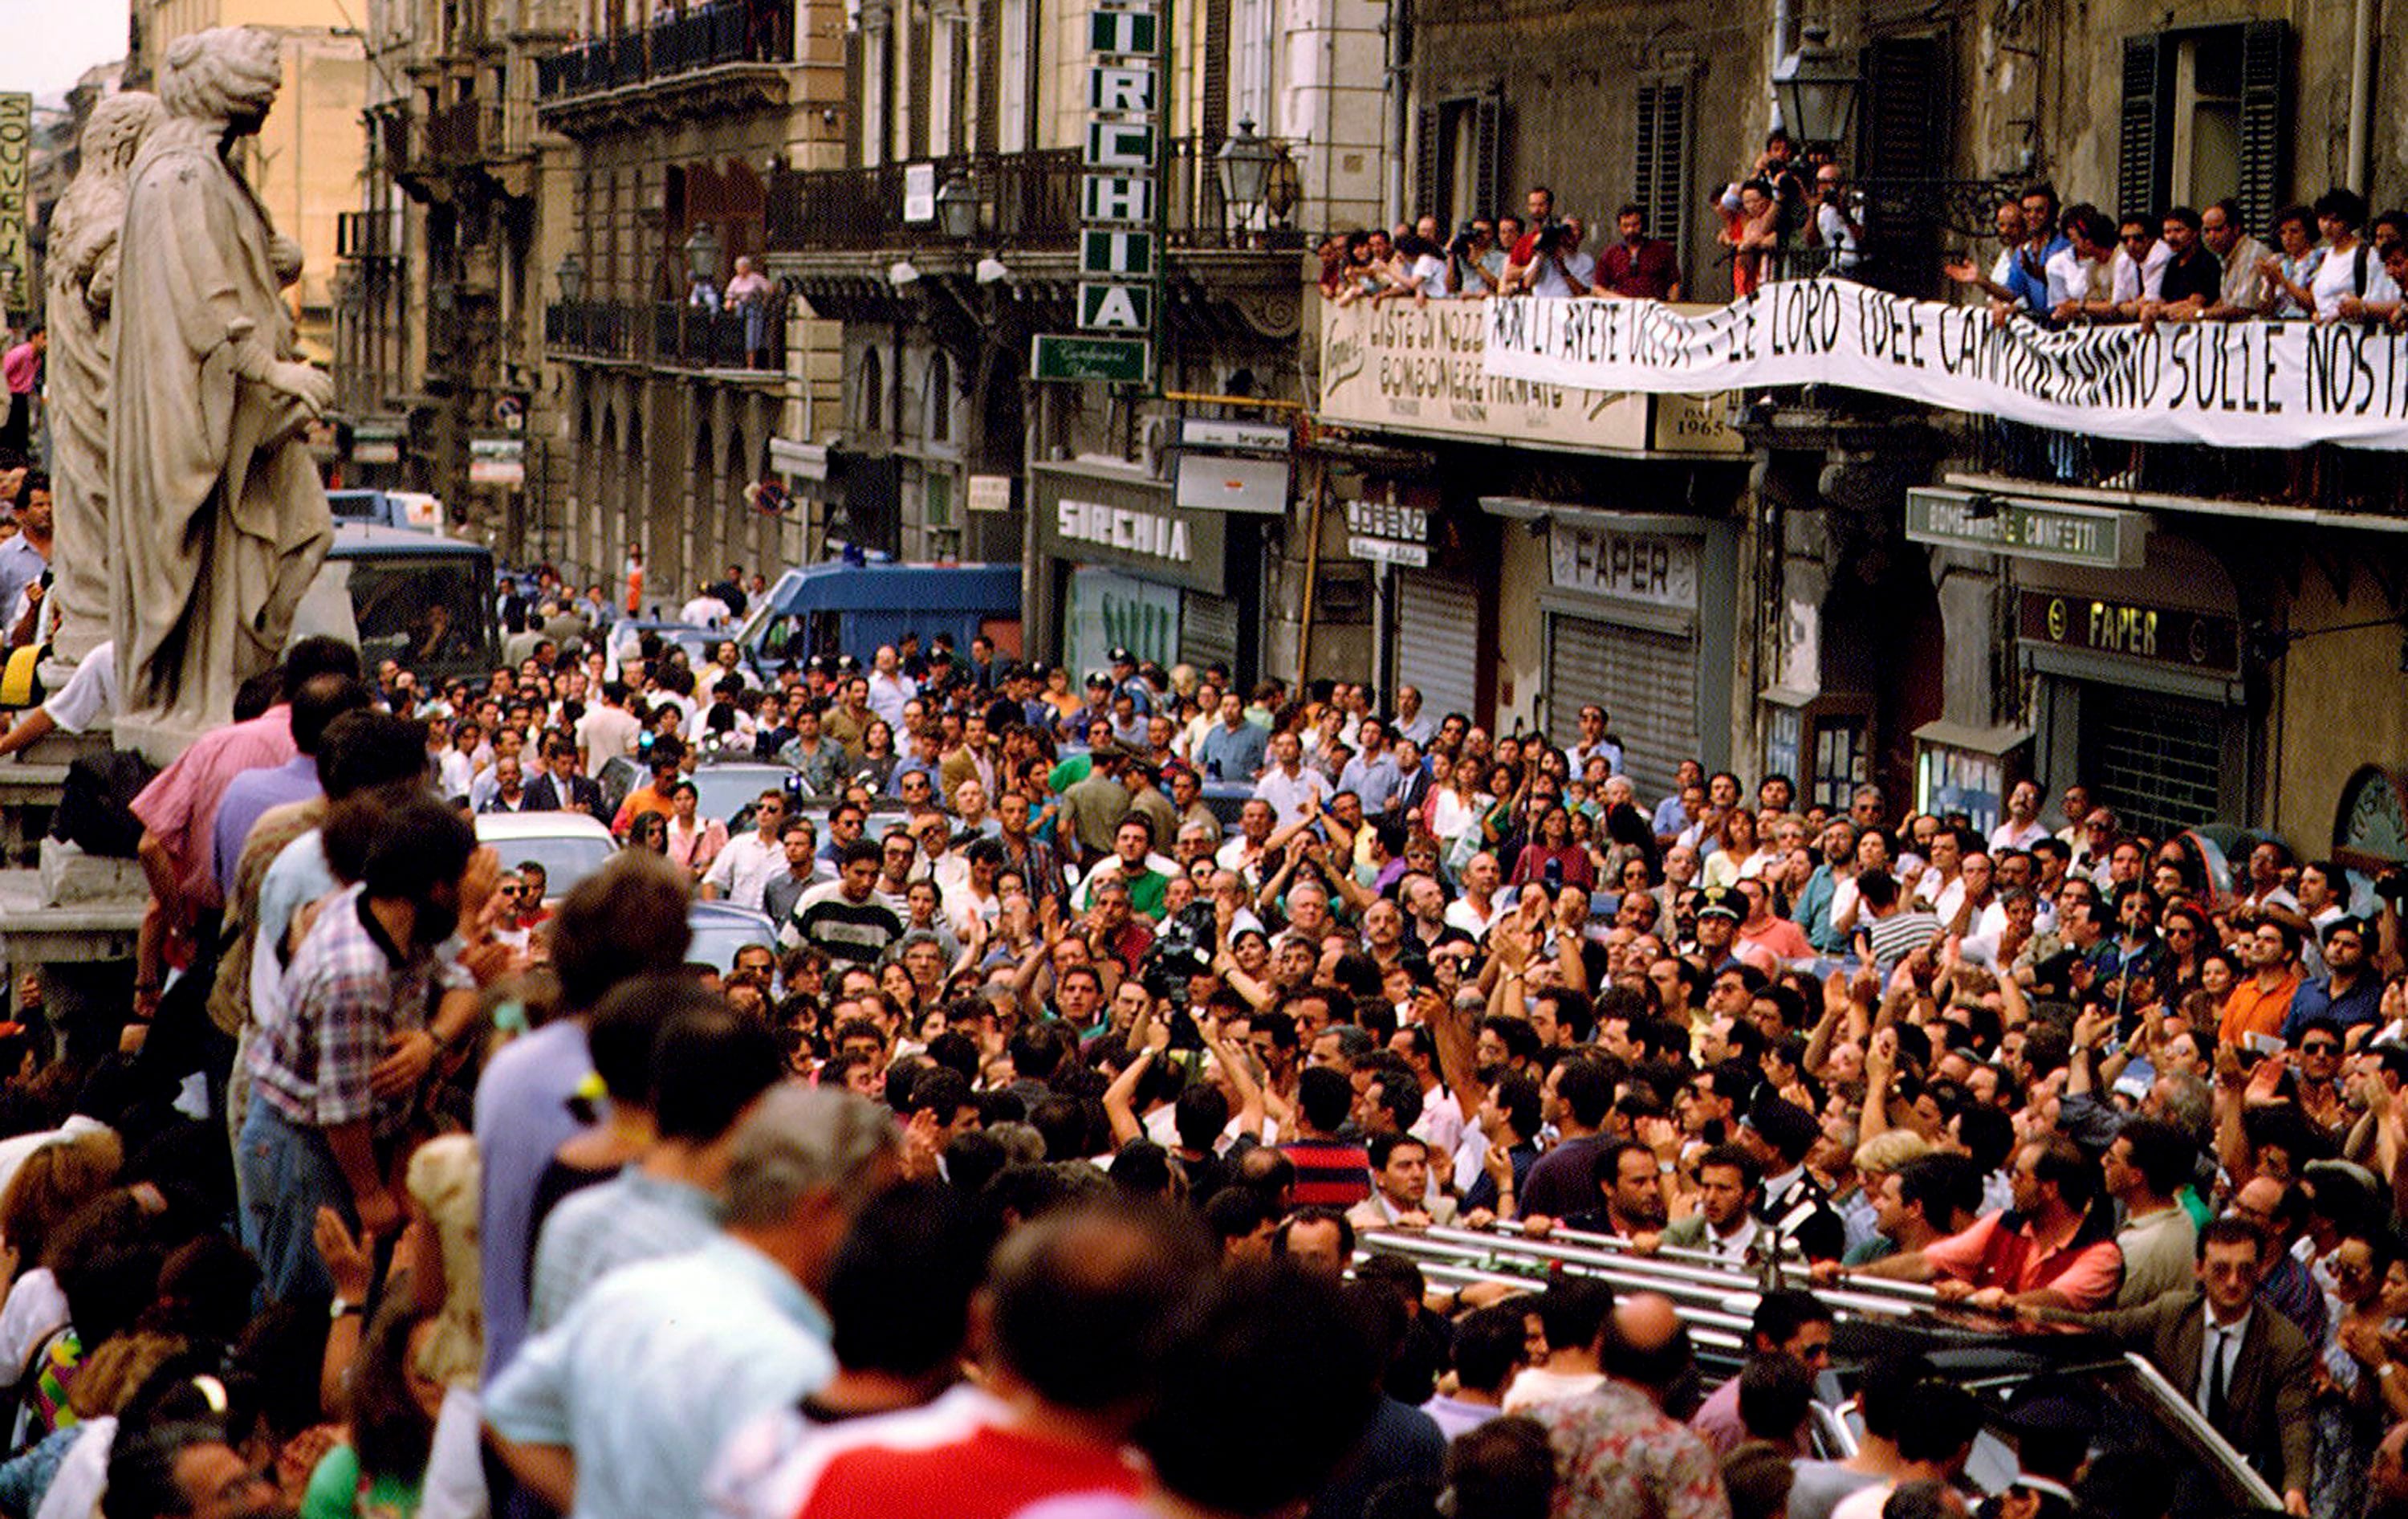 La folla applaude al passaggio delle bare del giudice italiano Paolo Borsellino e della sua scorta di polizia durante i funerali che si sono tenuti nella Cattedrale di Palermo il 24 luglio 1992